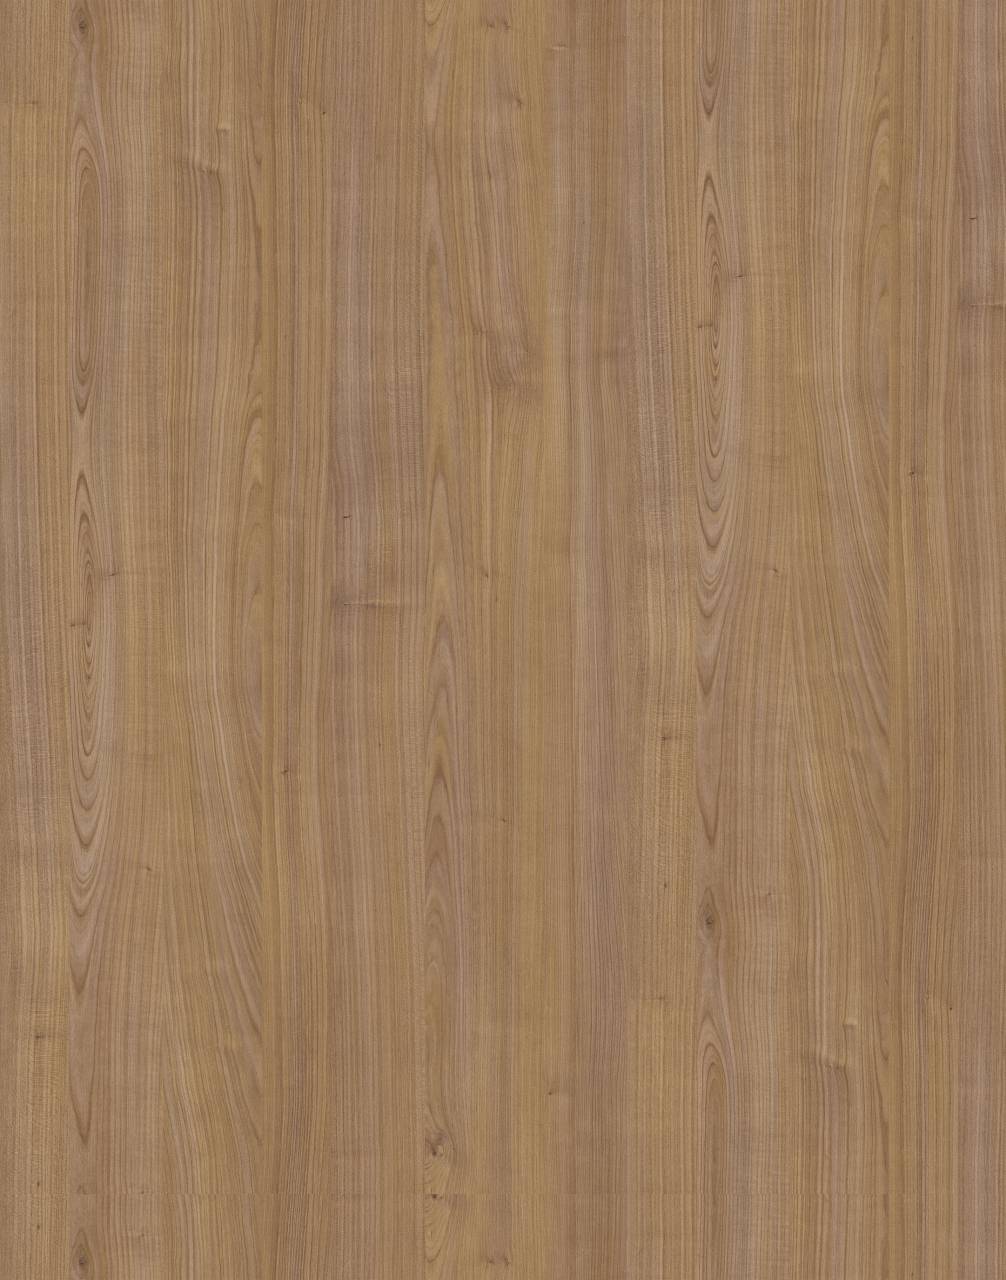 Dunkles Riverside Cherry PW HPL mit strukturierter Oberfläche und satten Brauntönen für einen luxuriösen und eleganten Look.